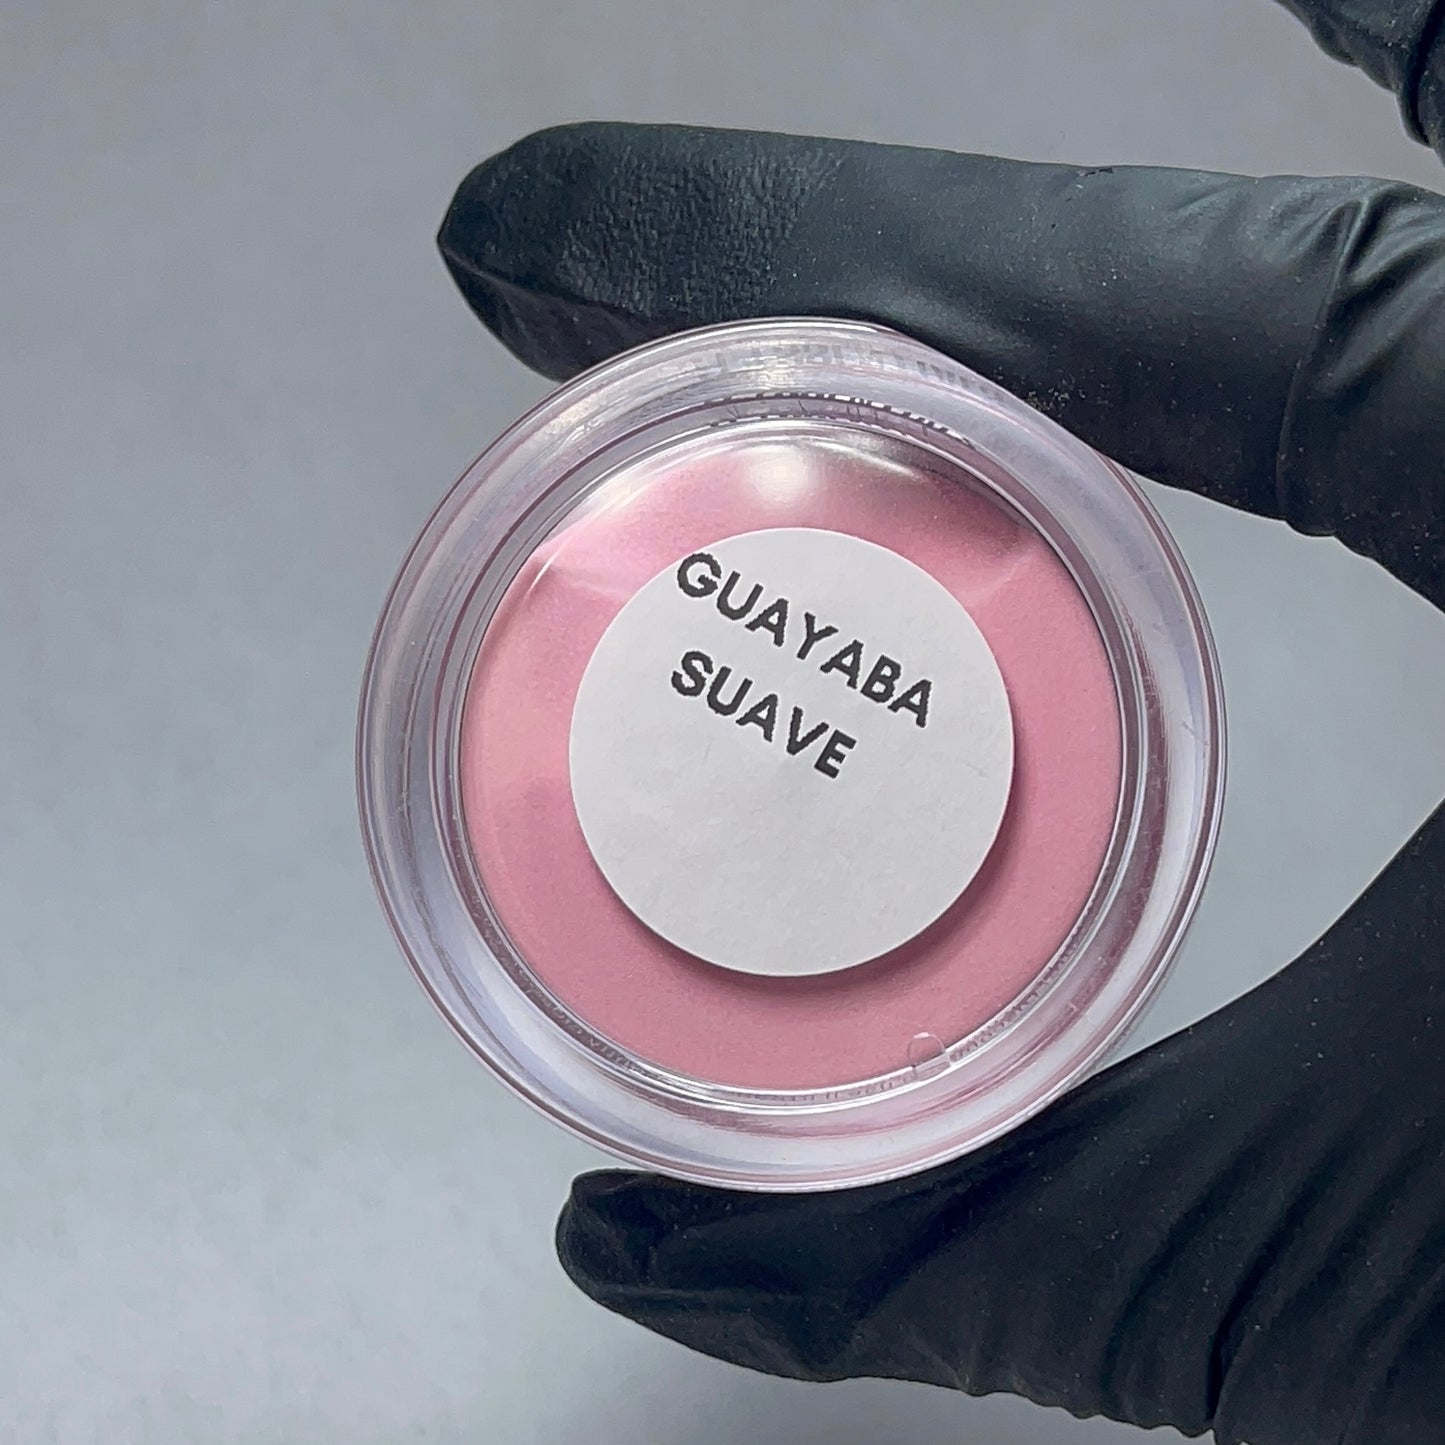 Guayaba Suave- Acrylic Powder 1oz